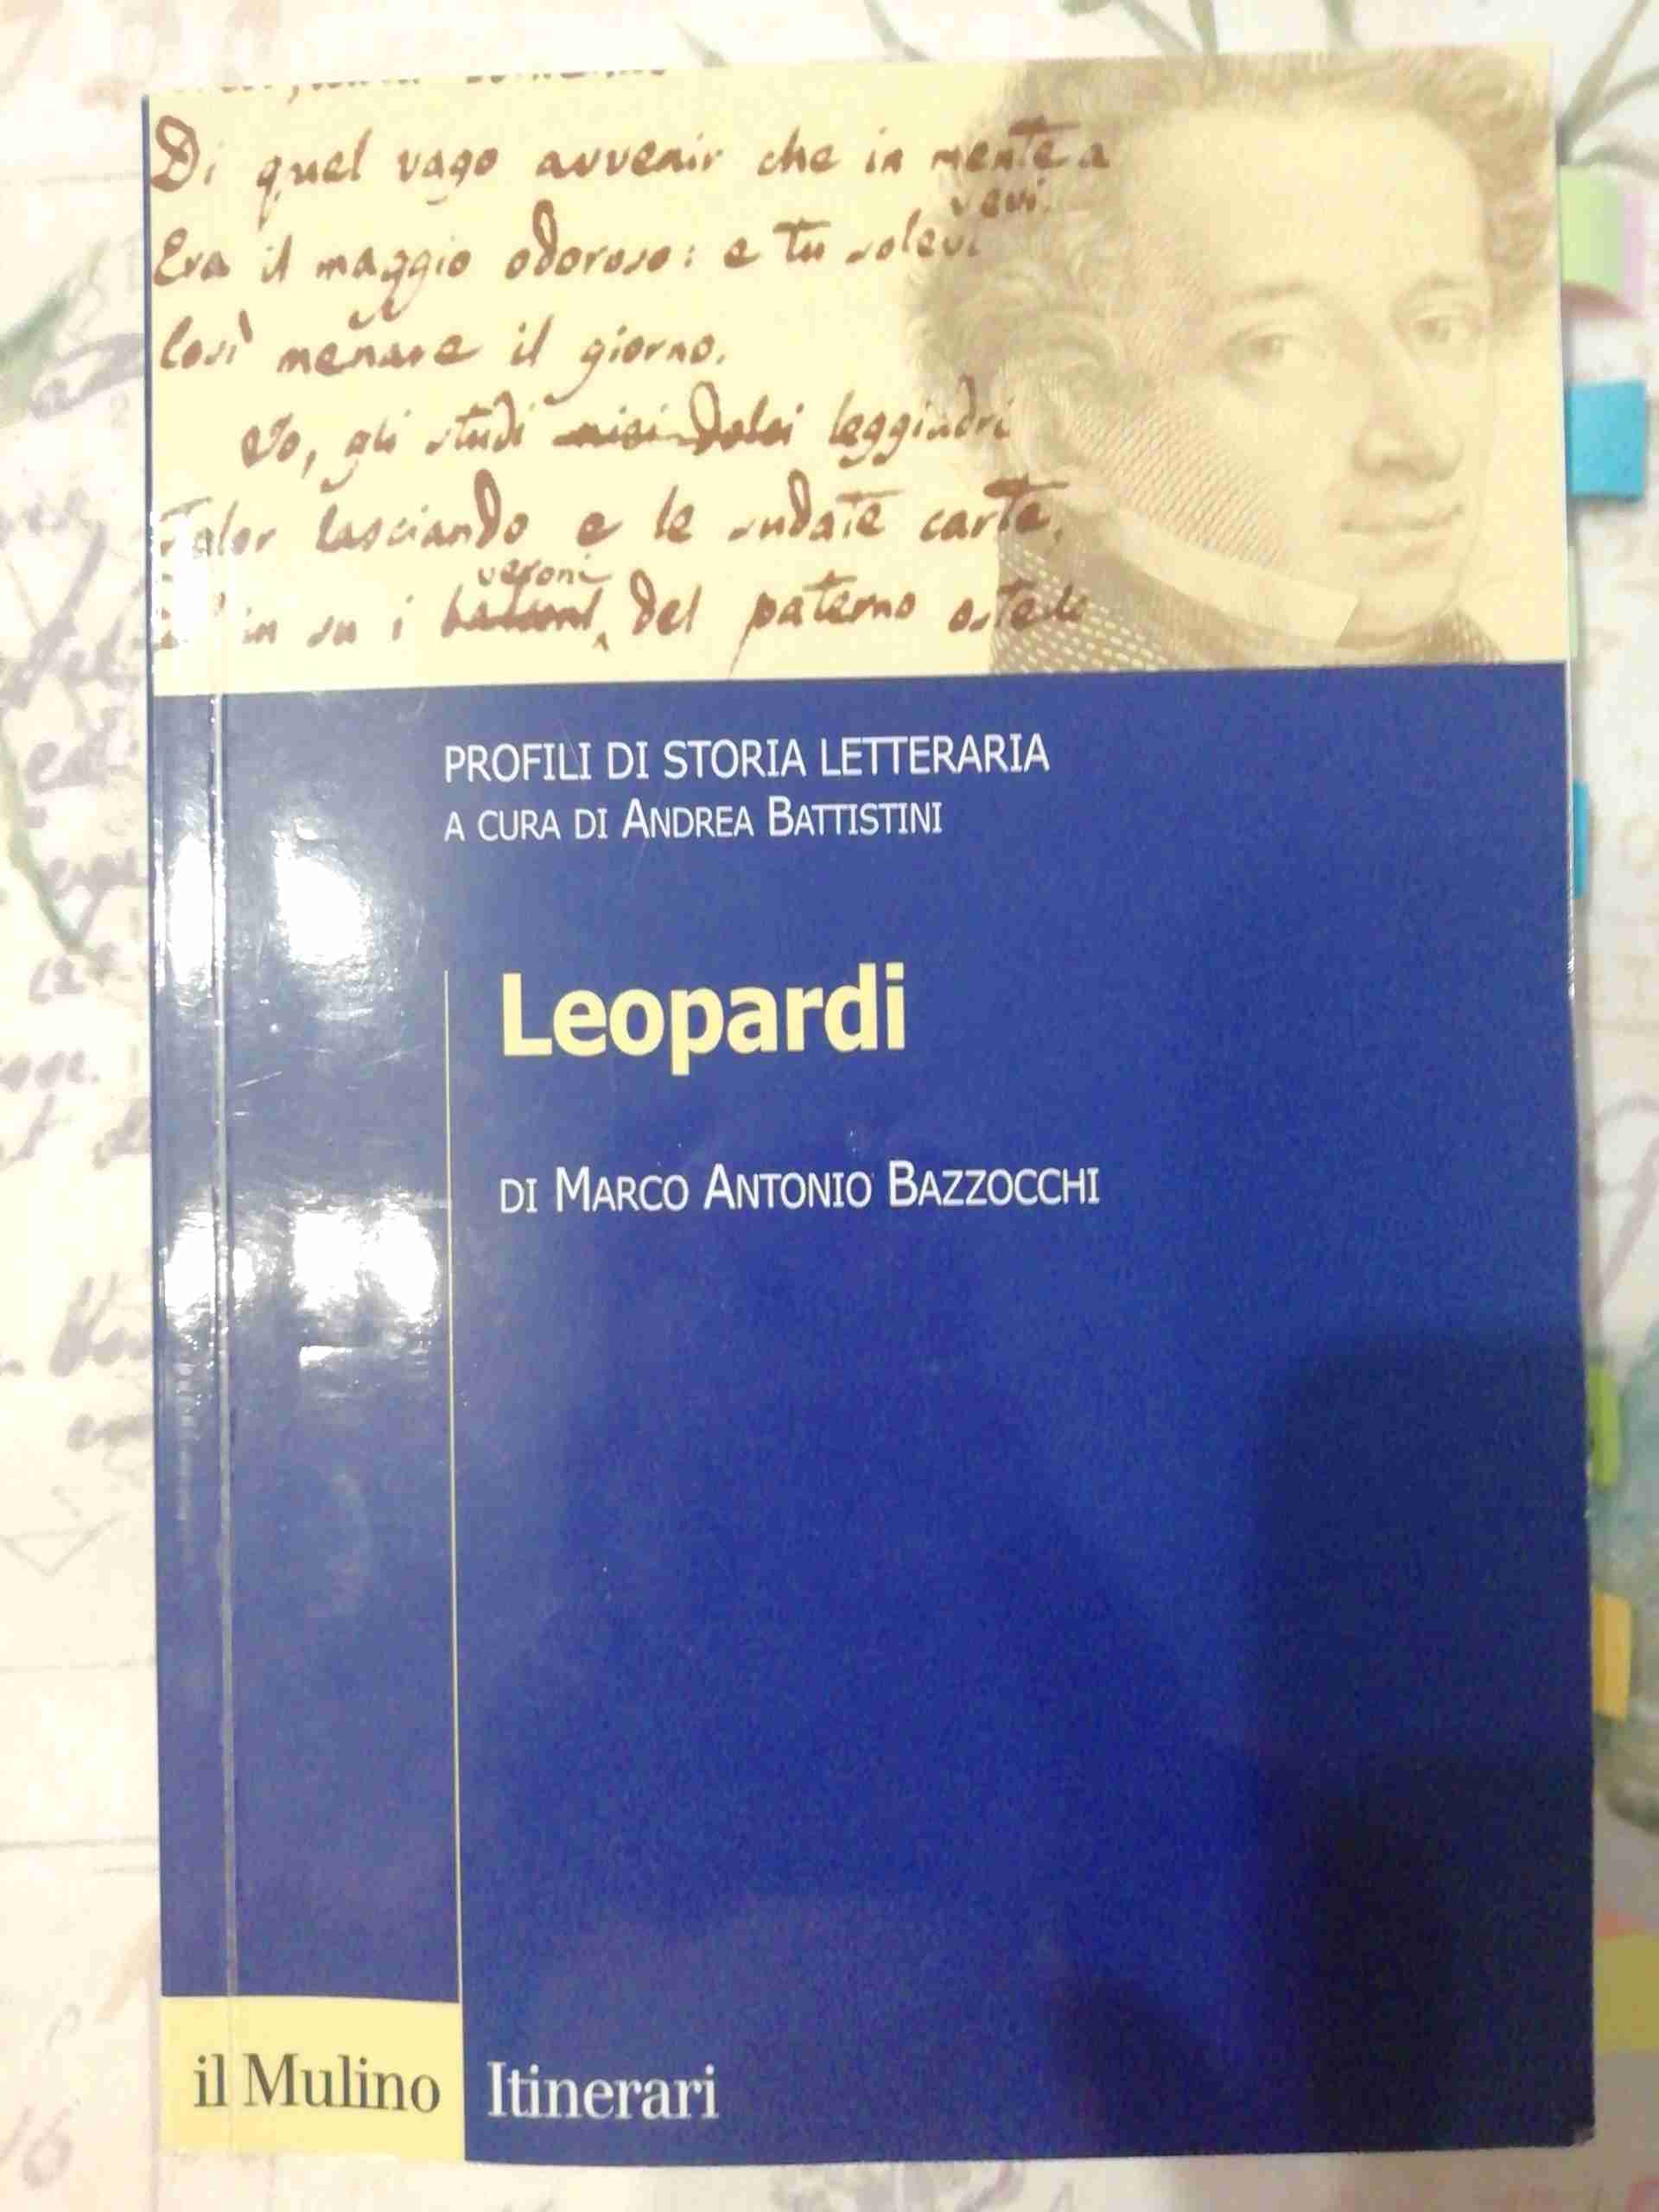 Profili di storia letteraria (a cura di Andrea Battistini) - LEOPARDI libro usato